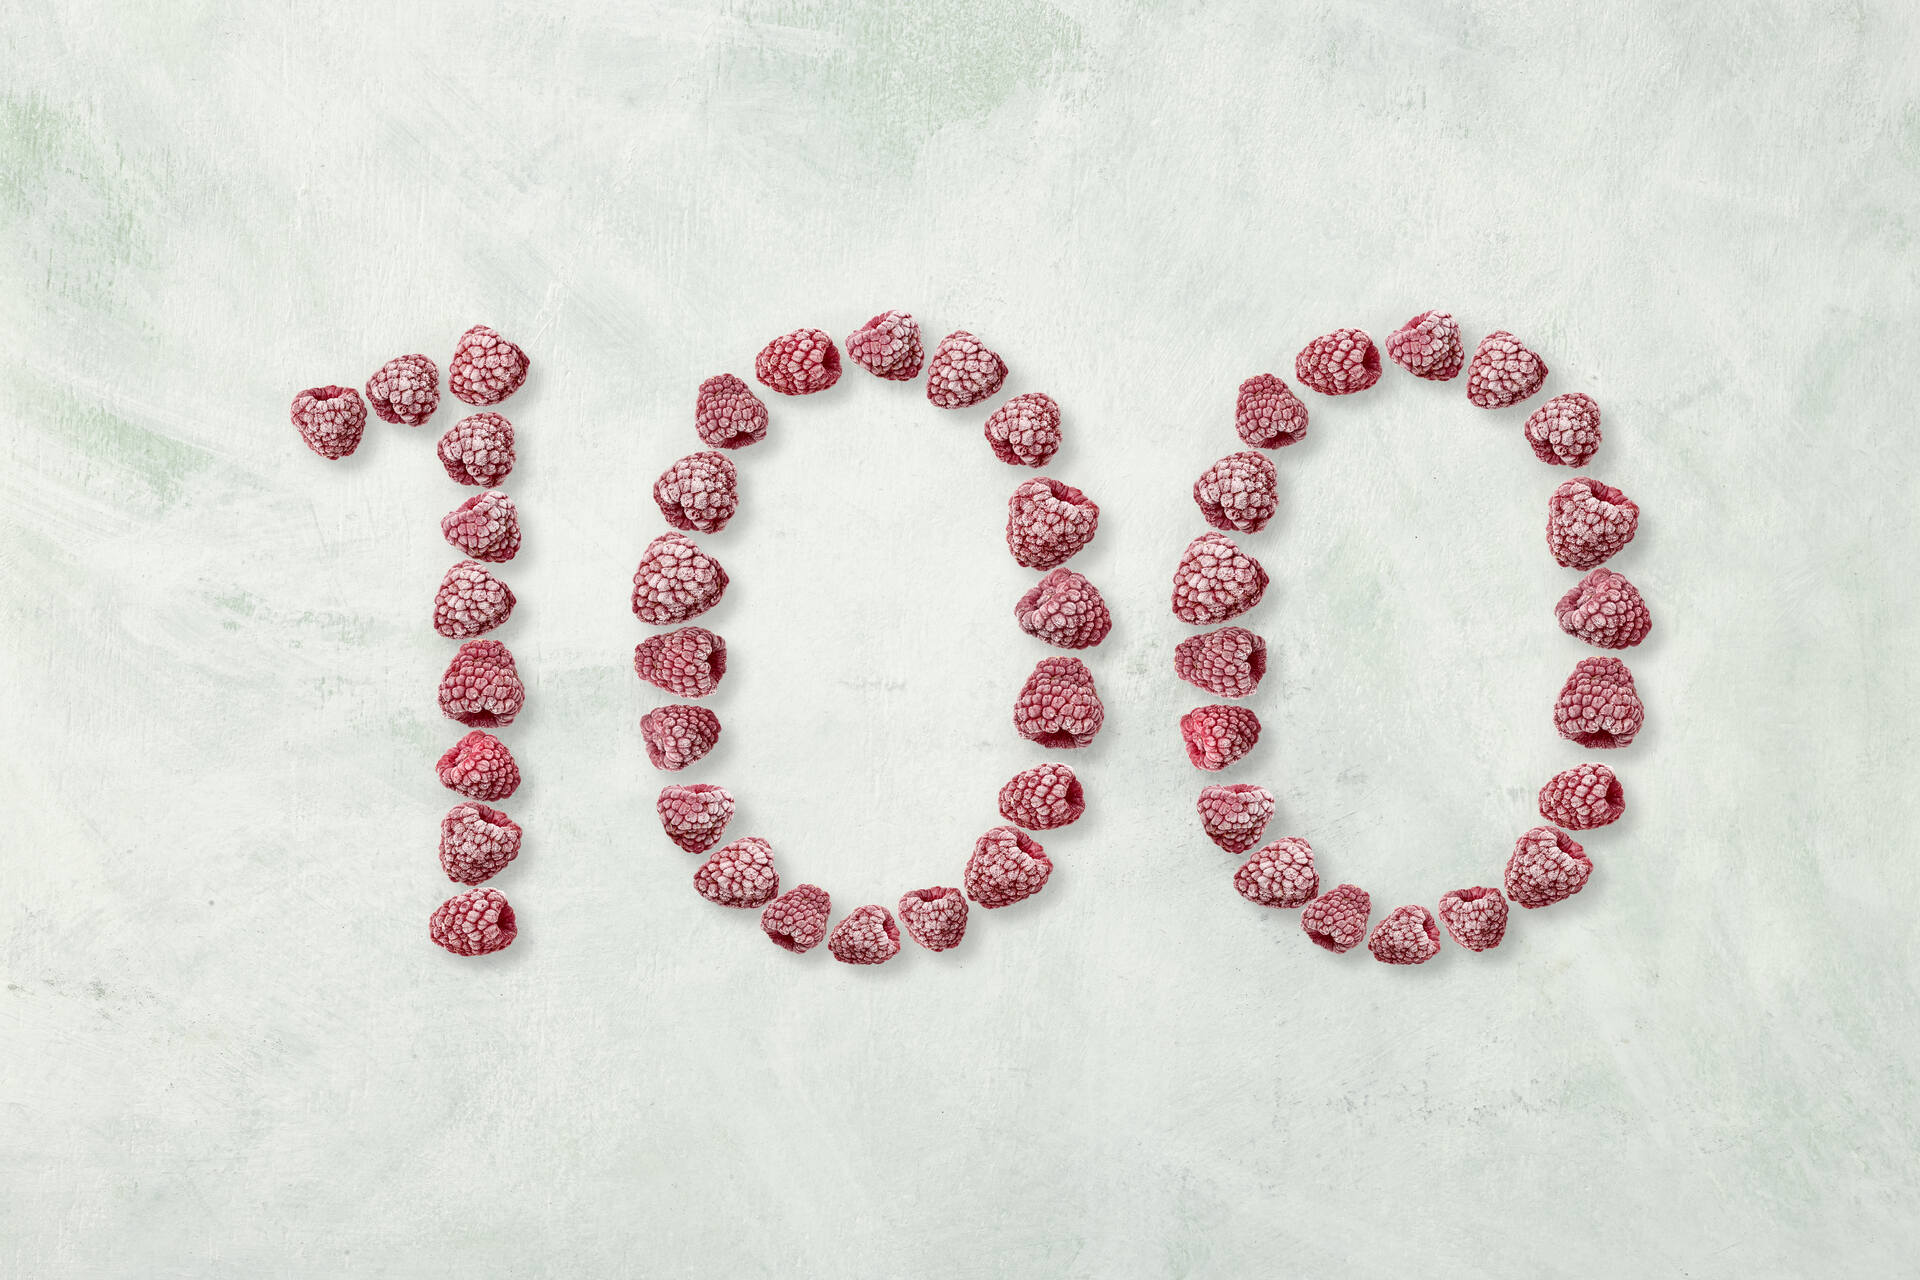 冷凍: 冷凍ラズベリーを 100 という数字にする